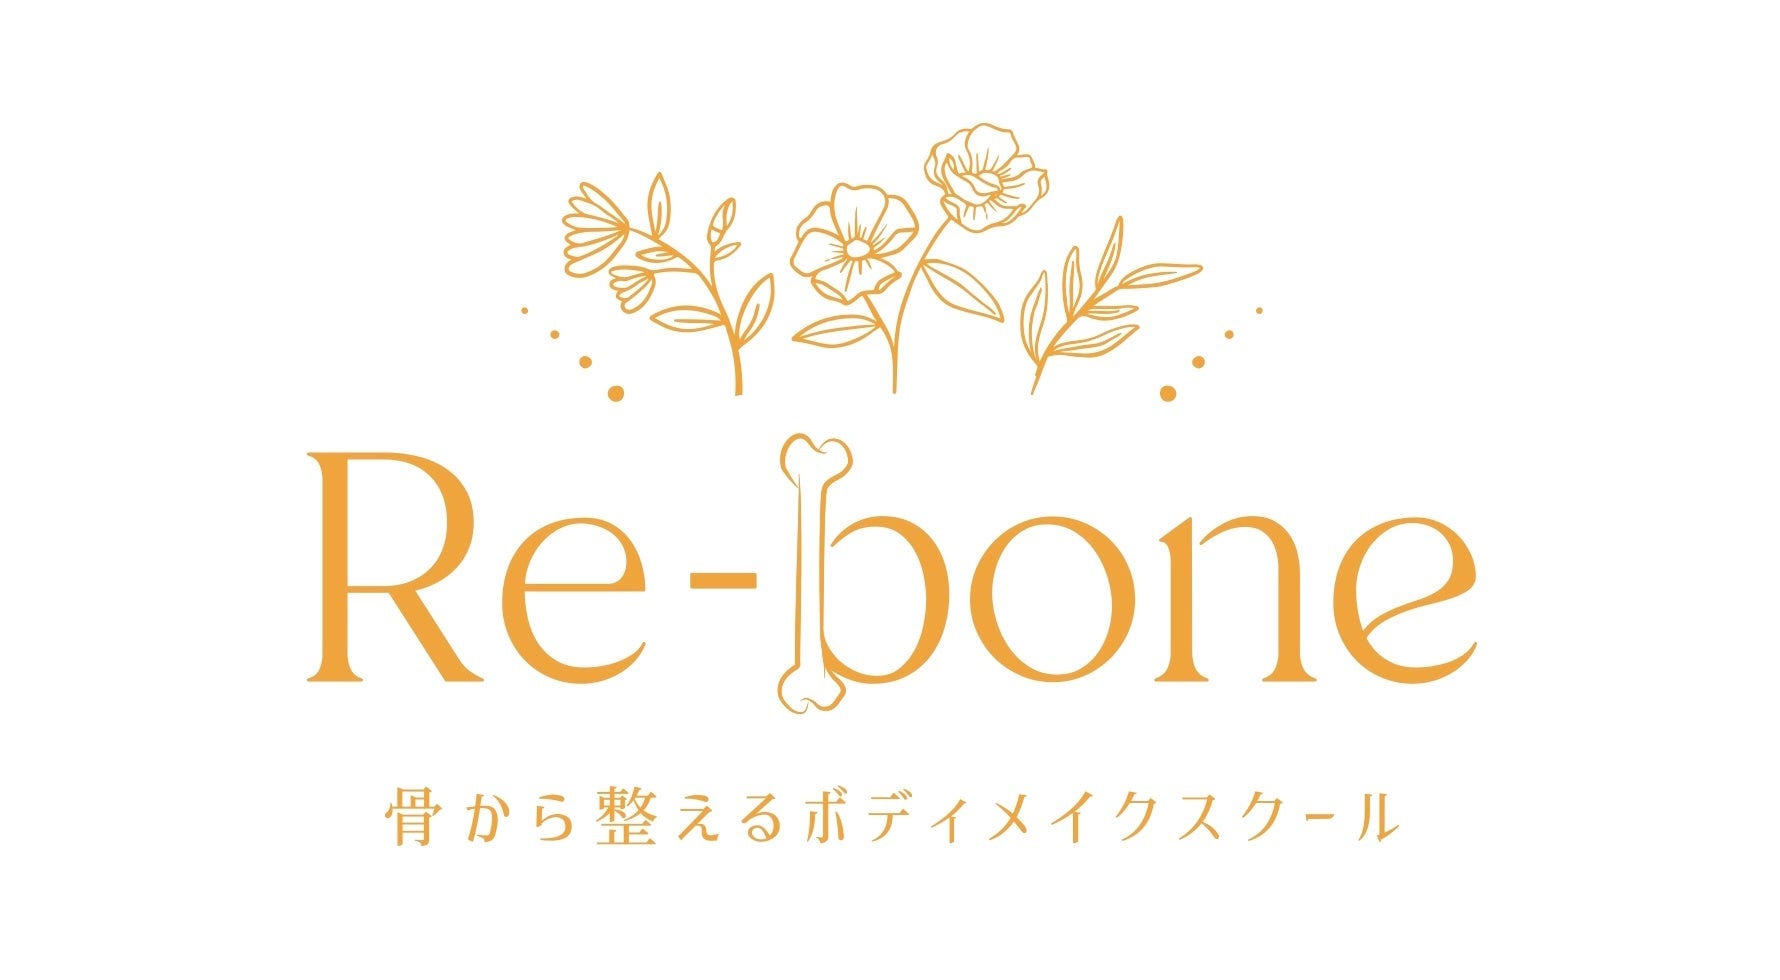 骨から整えるボディメイクスクール「Re-bone」”会員と一緒に作る”ボディメイク本の出版が決定。